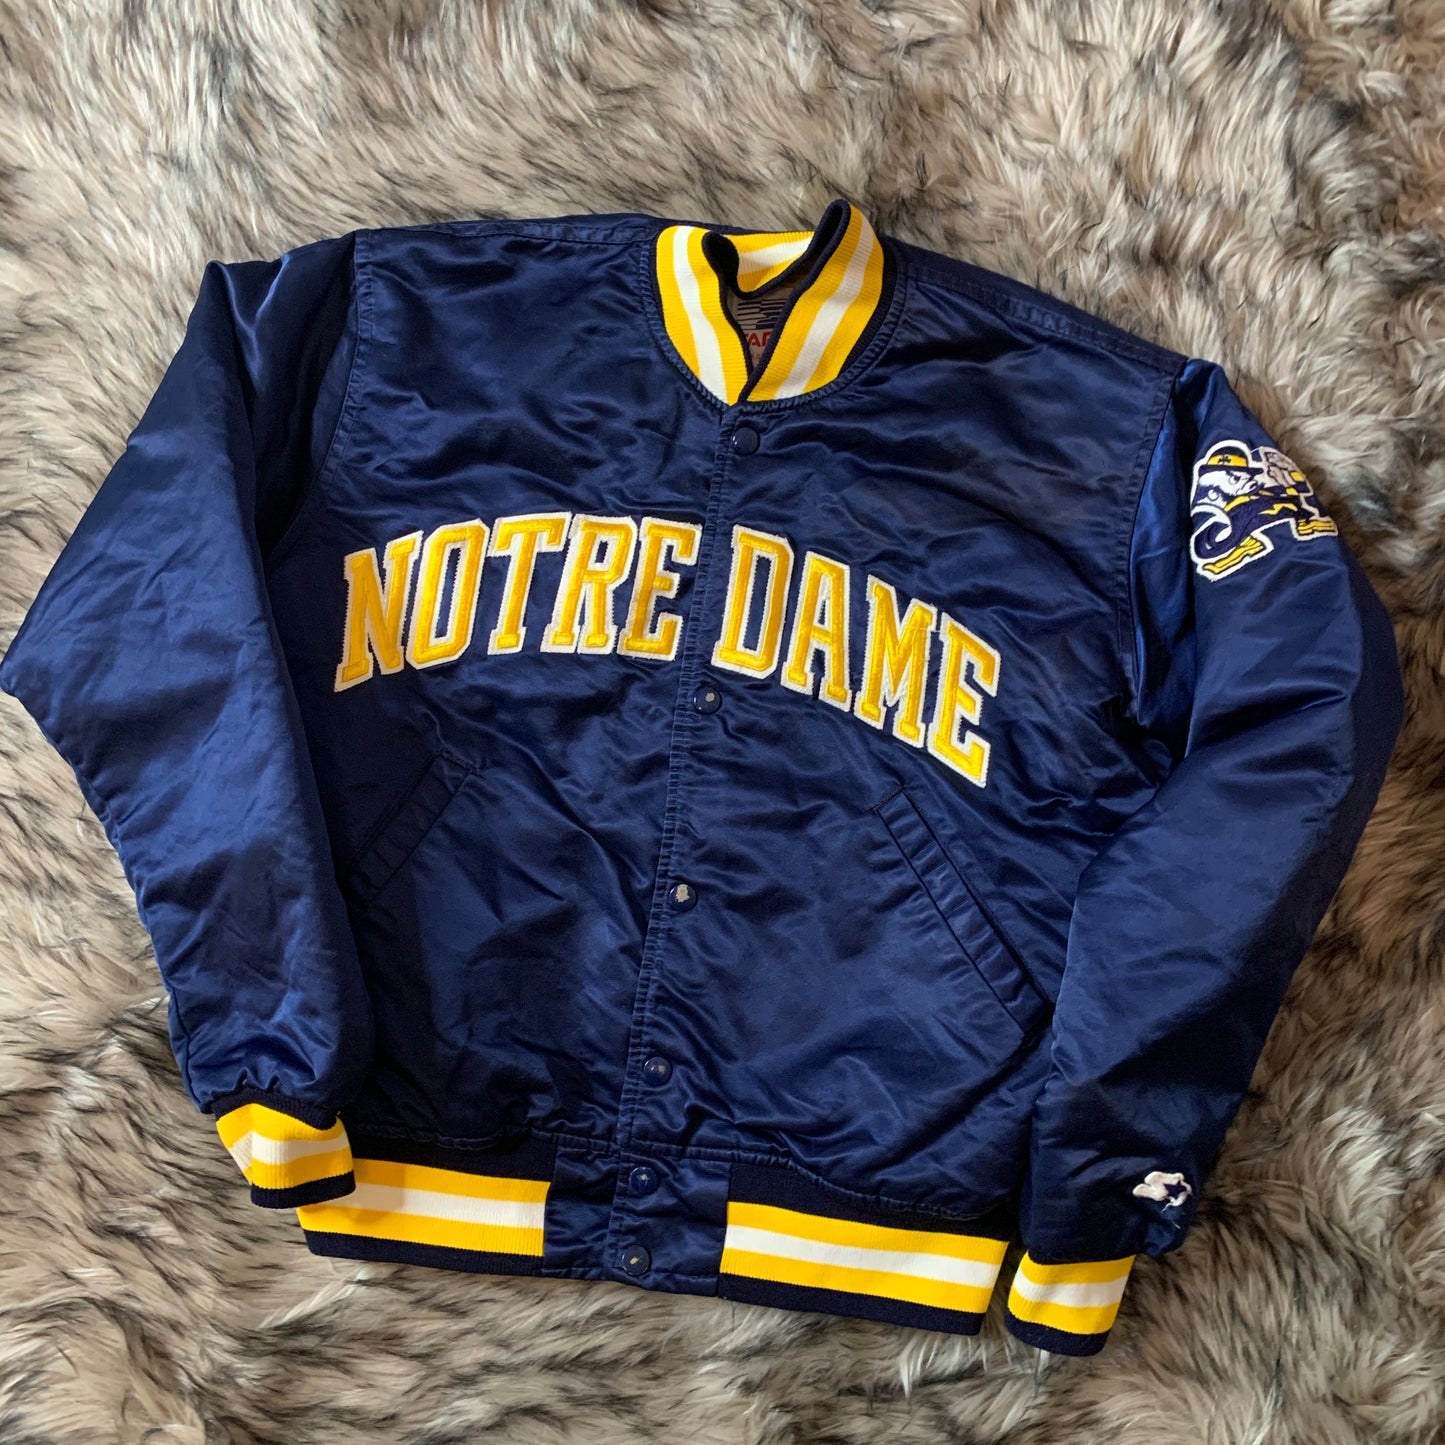 Vintage retro 90s Notre Dame satin starter jacket